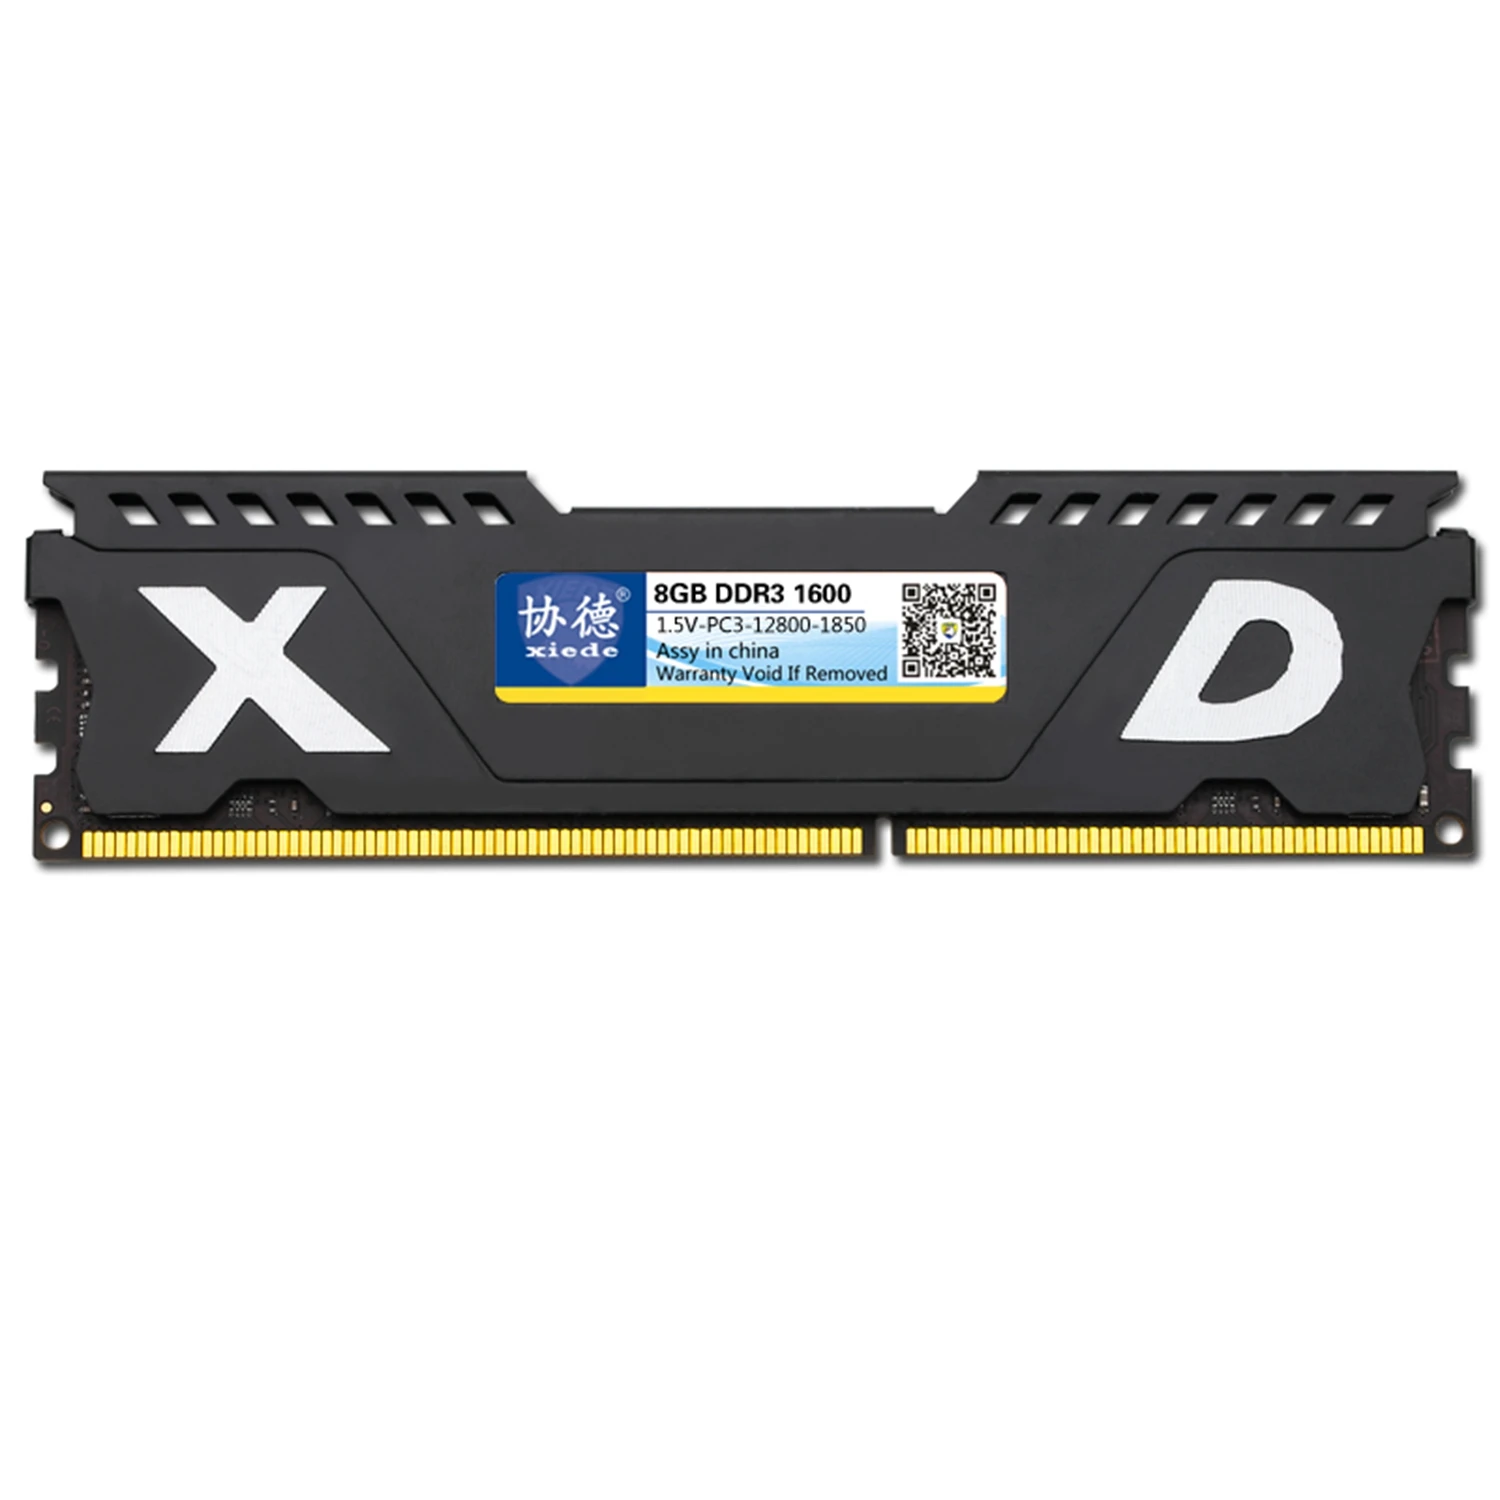 Горячая-Xiede настольный компьютер Память ОЗУ модуль Ddr3 1600 8 Гб PC3-12800 240Pin DIMM 1600 МГц с радиатором для AMD/Inter